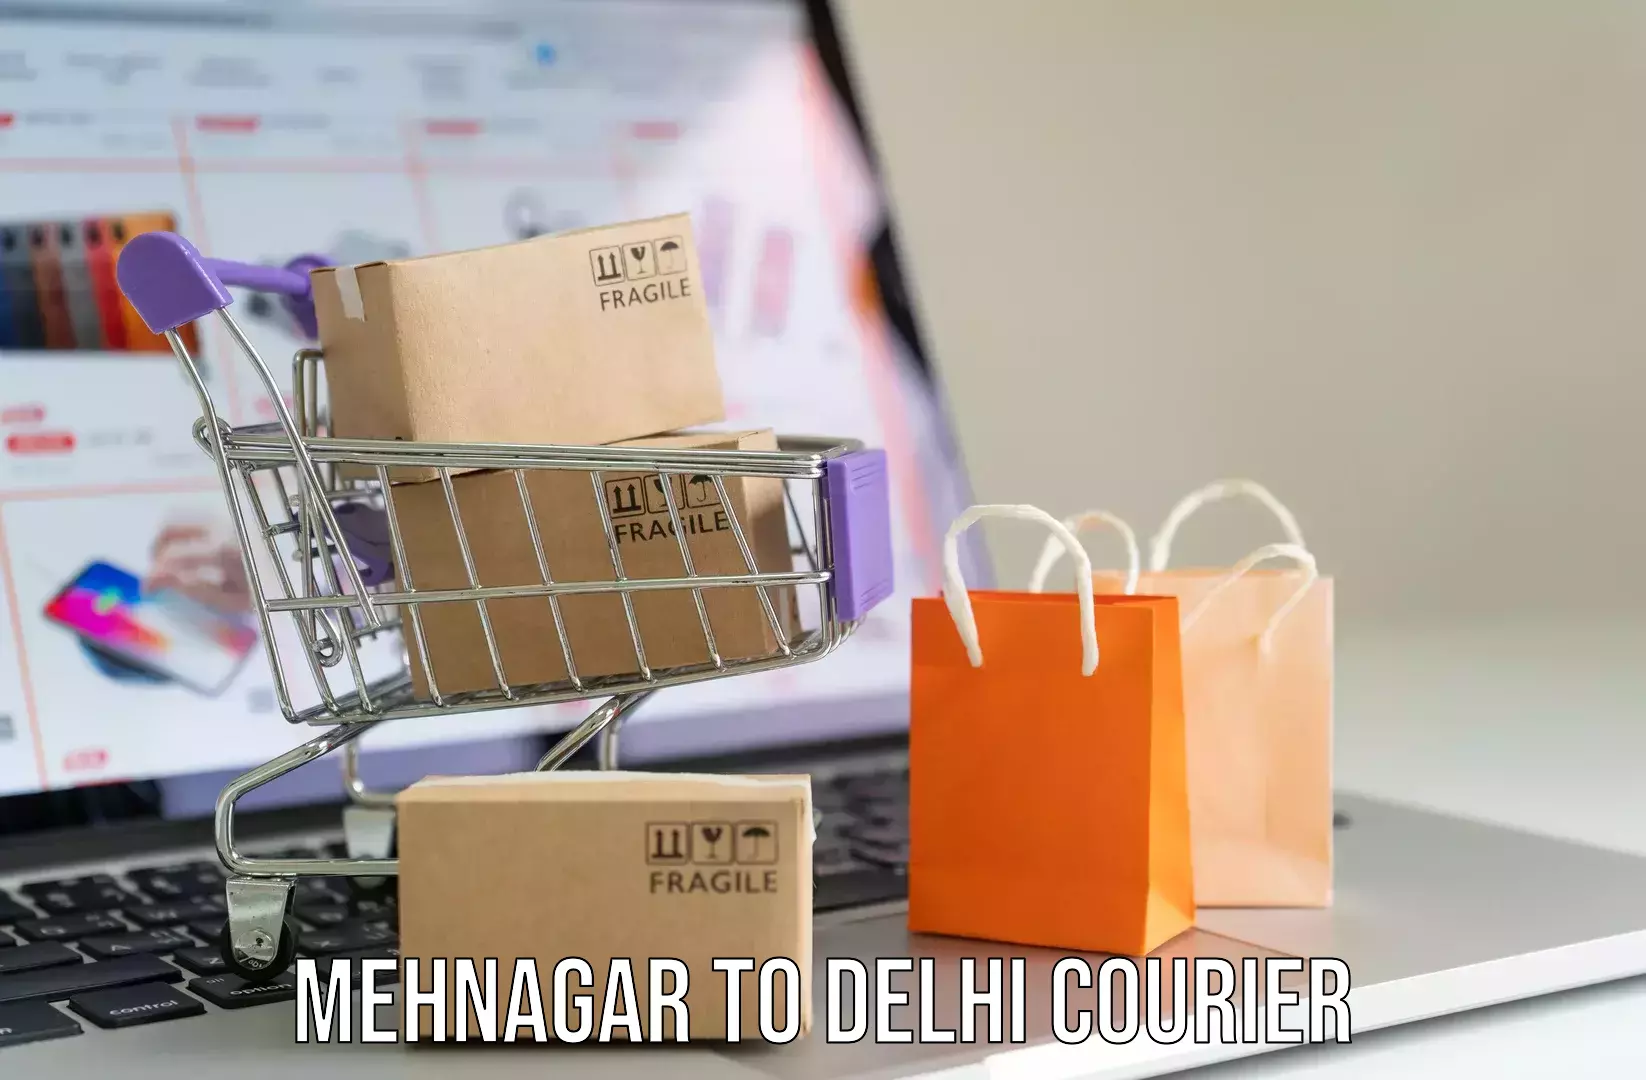 Luggage transport service in Mehnagar to IIT Delhi